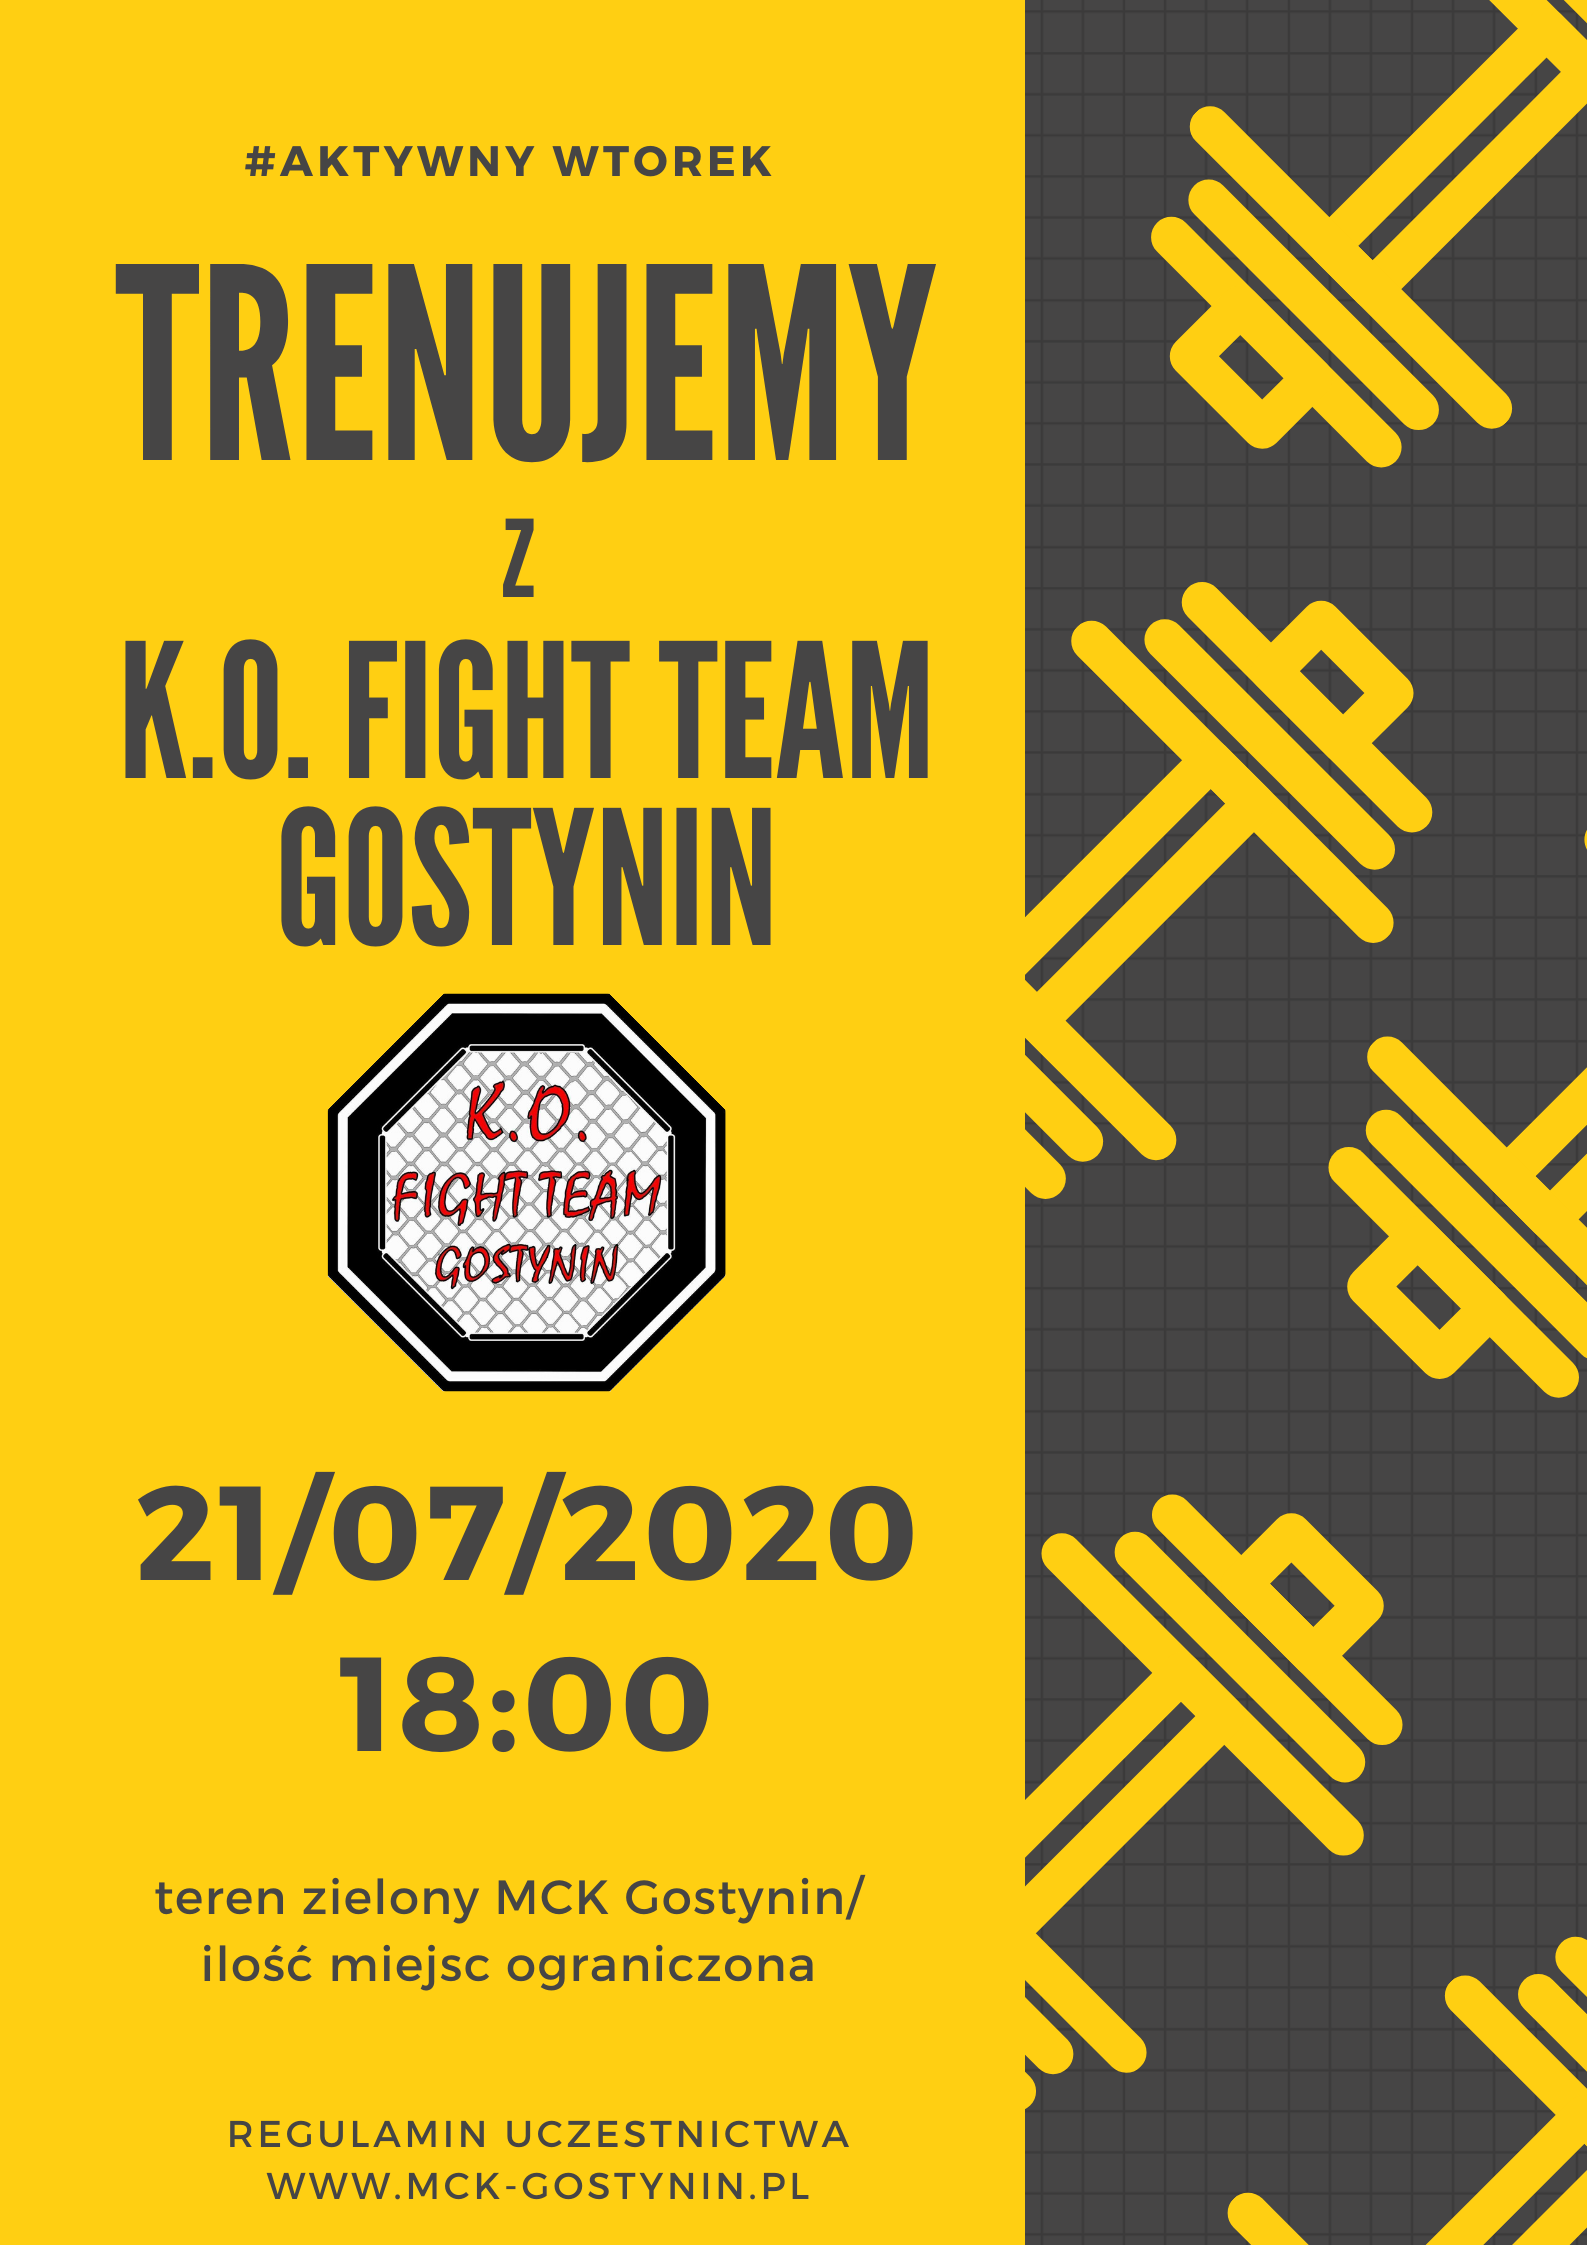 21/07 | Trenujemy z K.O. Fight Team Gostynin – AKTYWNY WTOREK